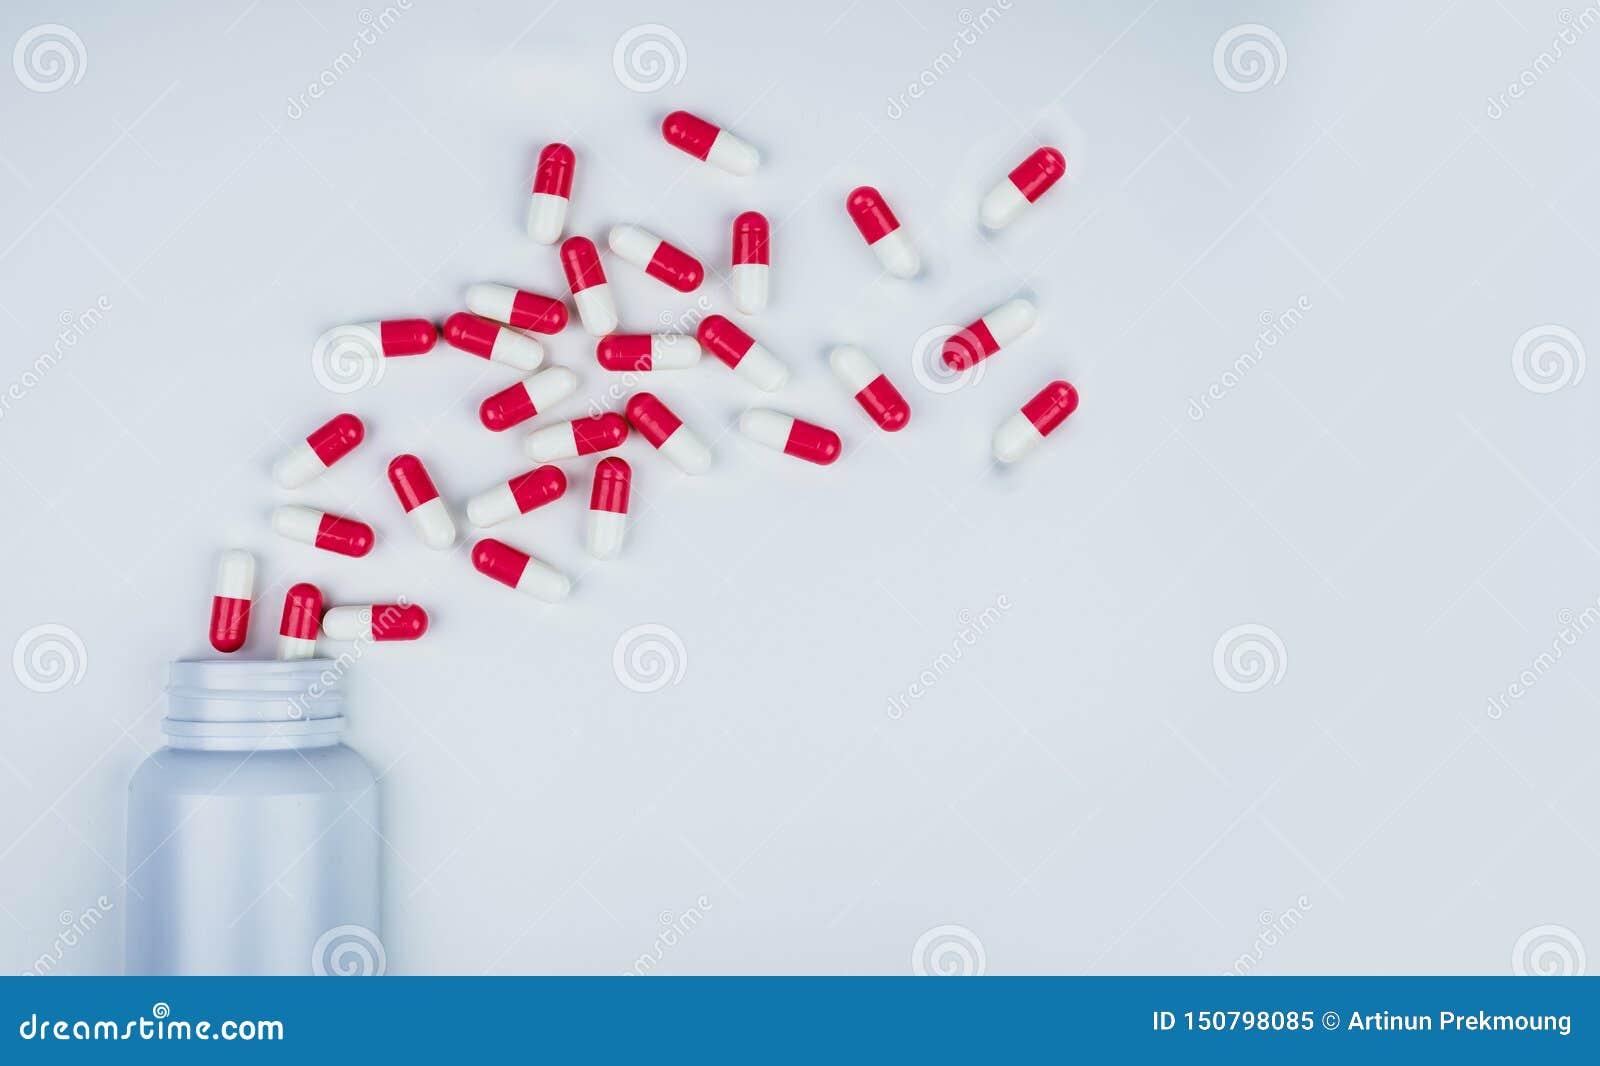 red-white antibiotic capsule pills spread out of white plastic drug bottle. antibiotic drug resistance concept. antibiotic drug